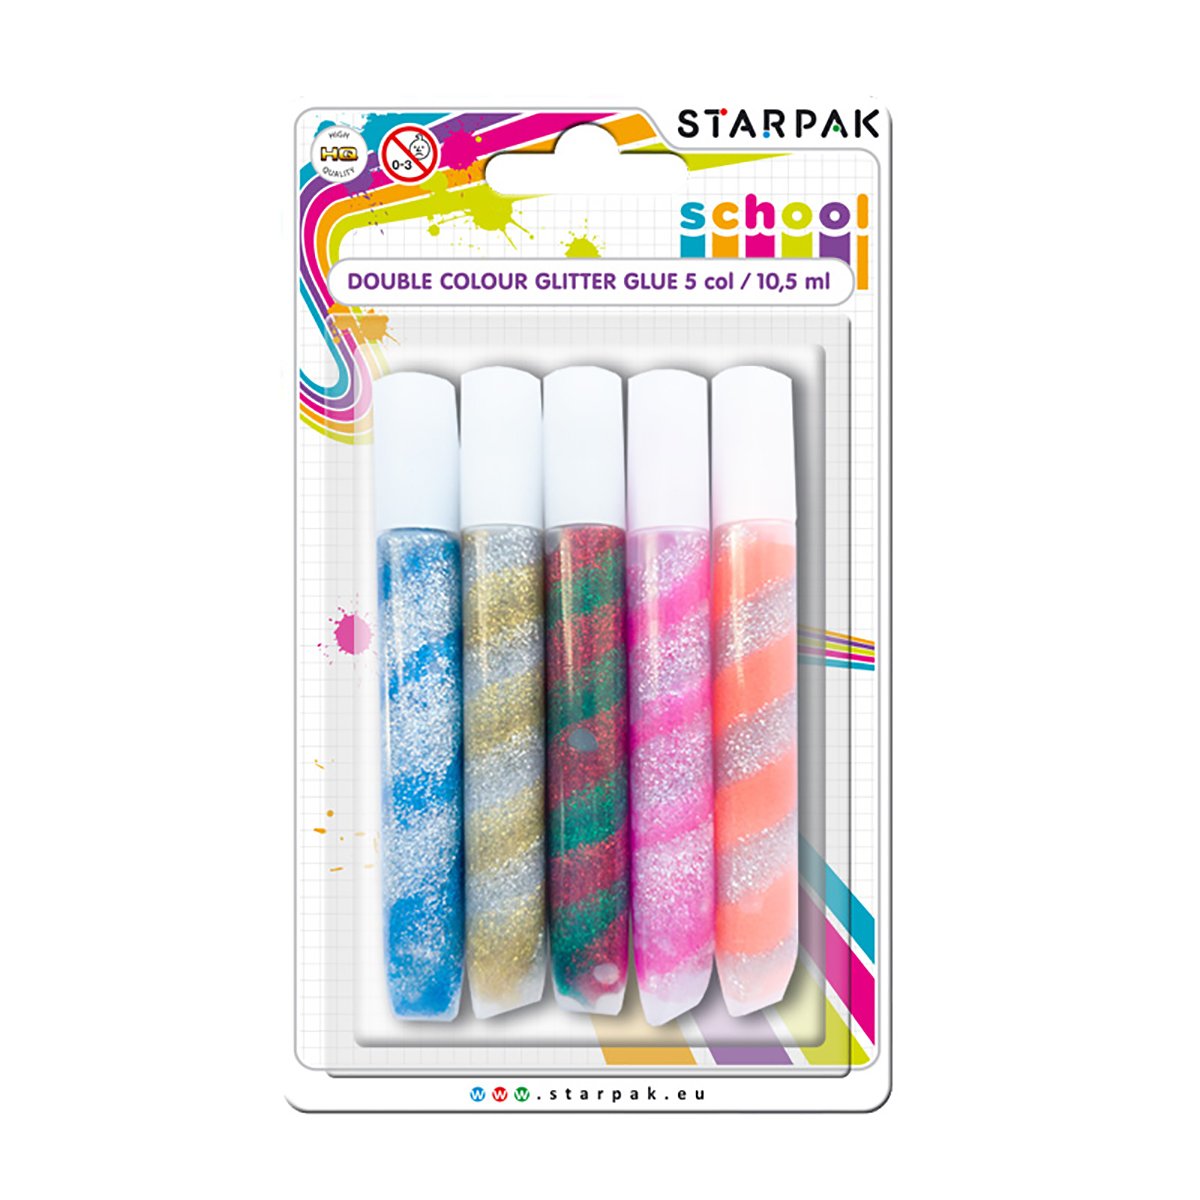 Lipici cu glitter in doua culori Starpak, 10.5 ml noriel.ro imagine 2022